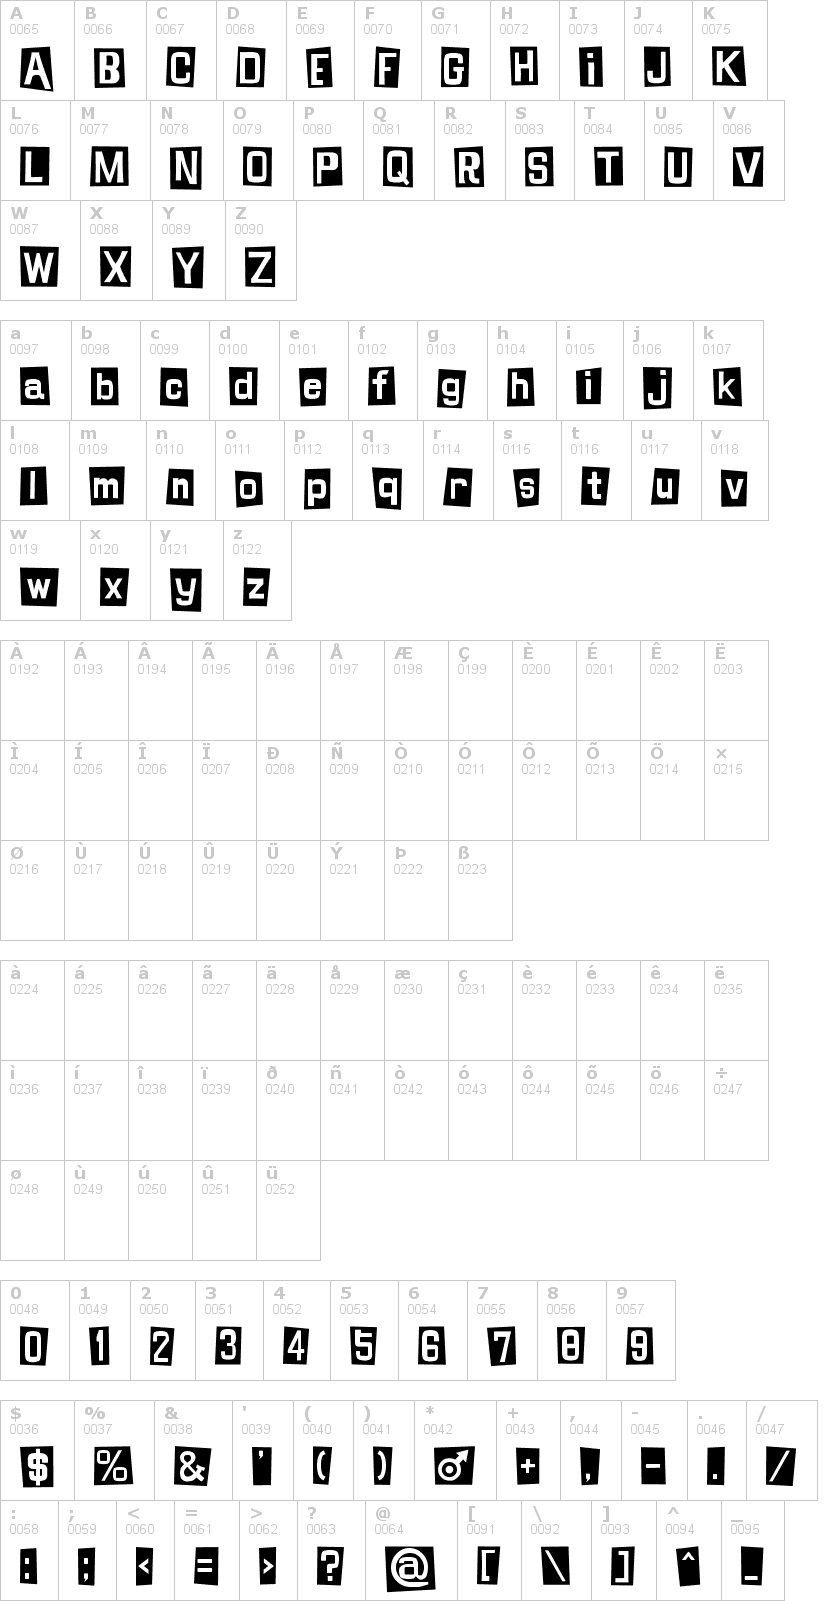 Lettere dell'alfabeto del font shinji-blues con le quali è possibile realizzare adesivi prespaziati